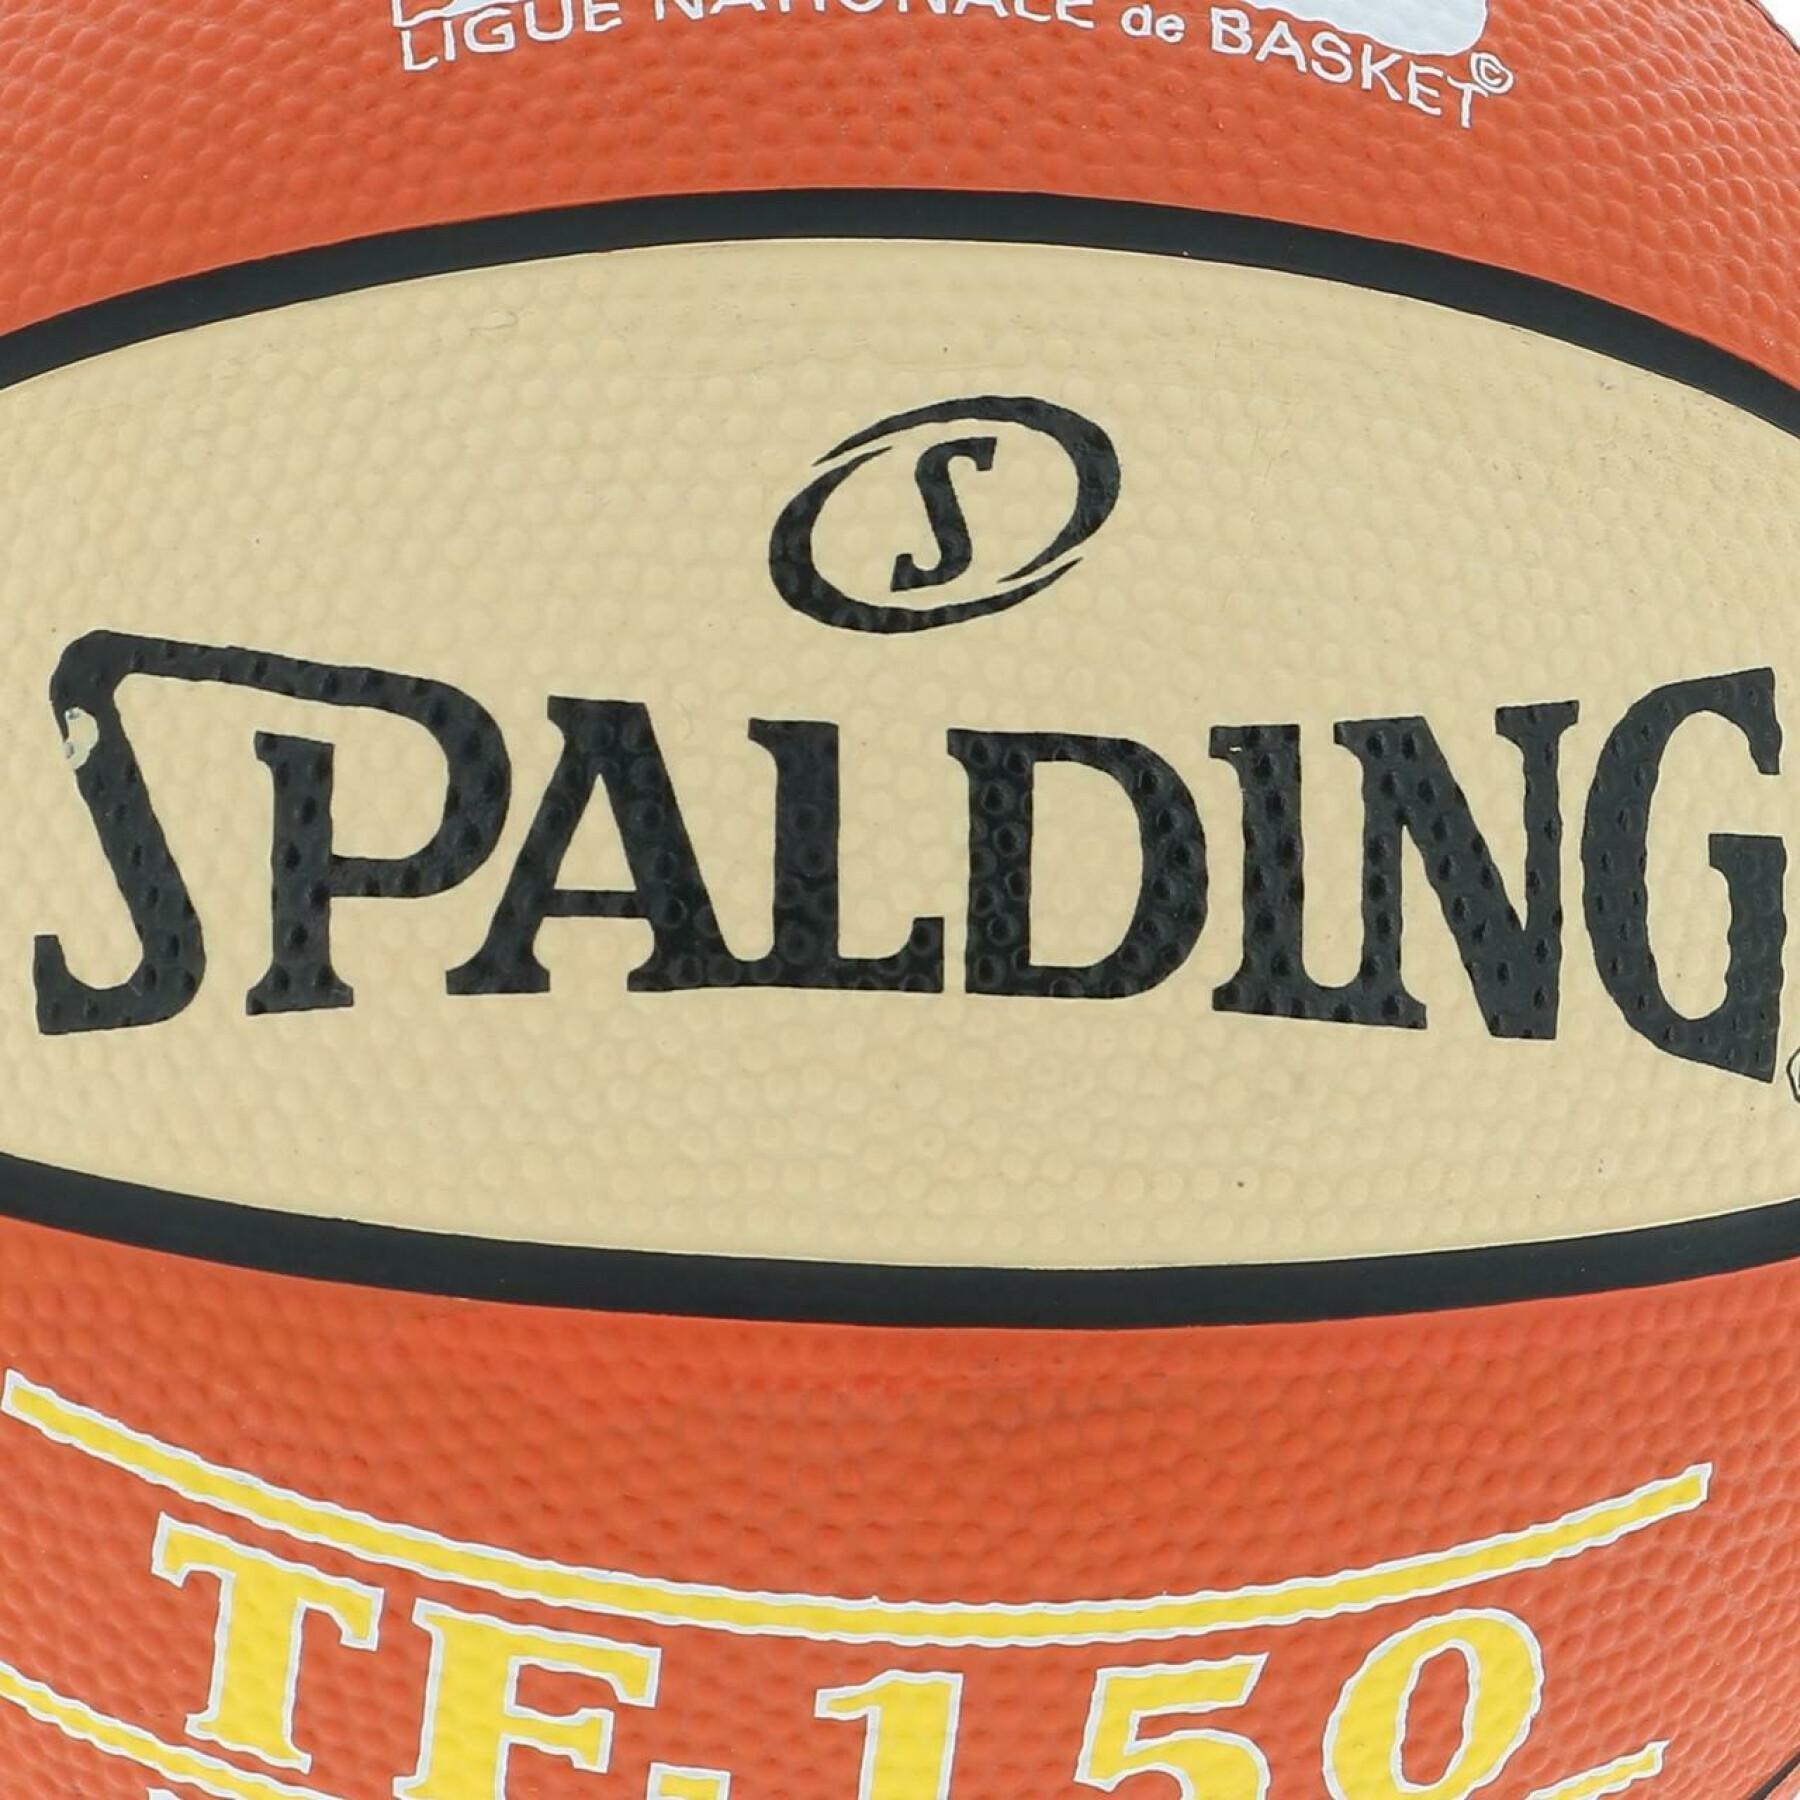 Ballon Spalding LNB Tf150 (65-056z)